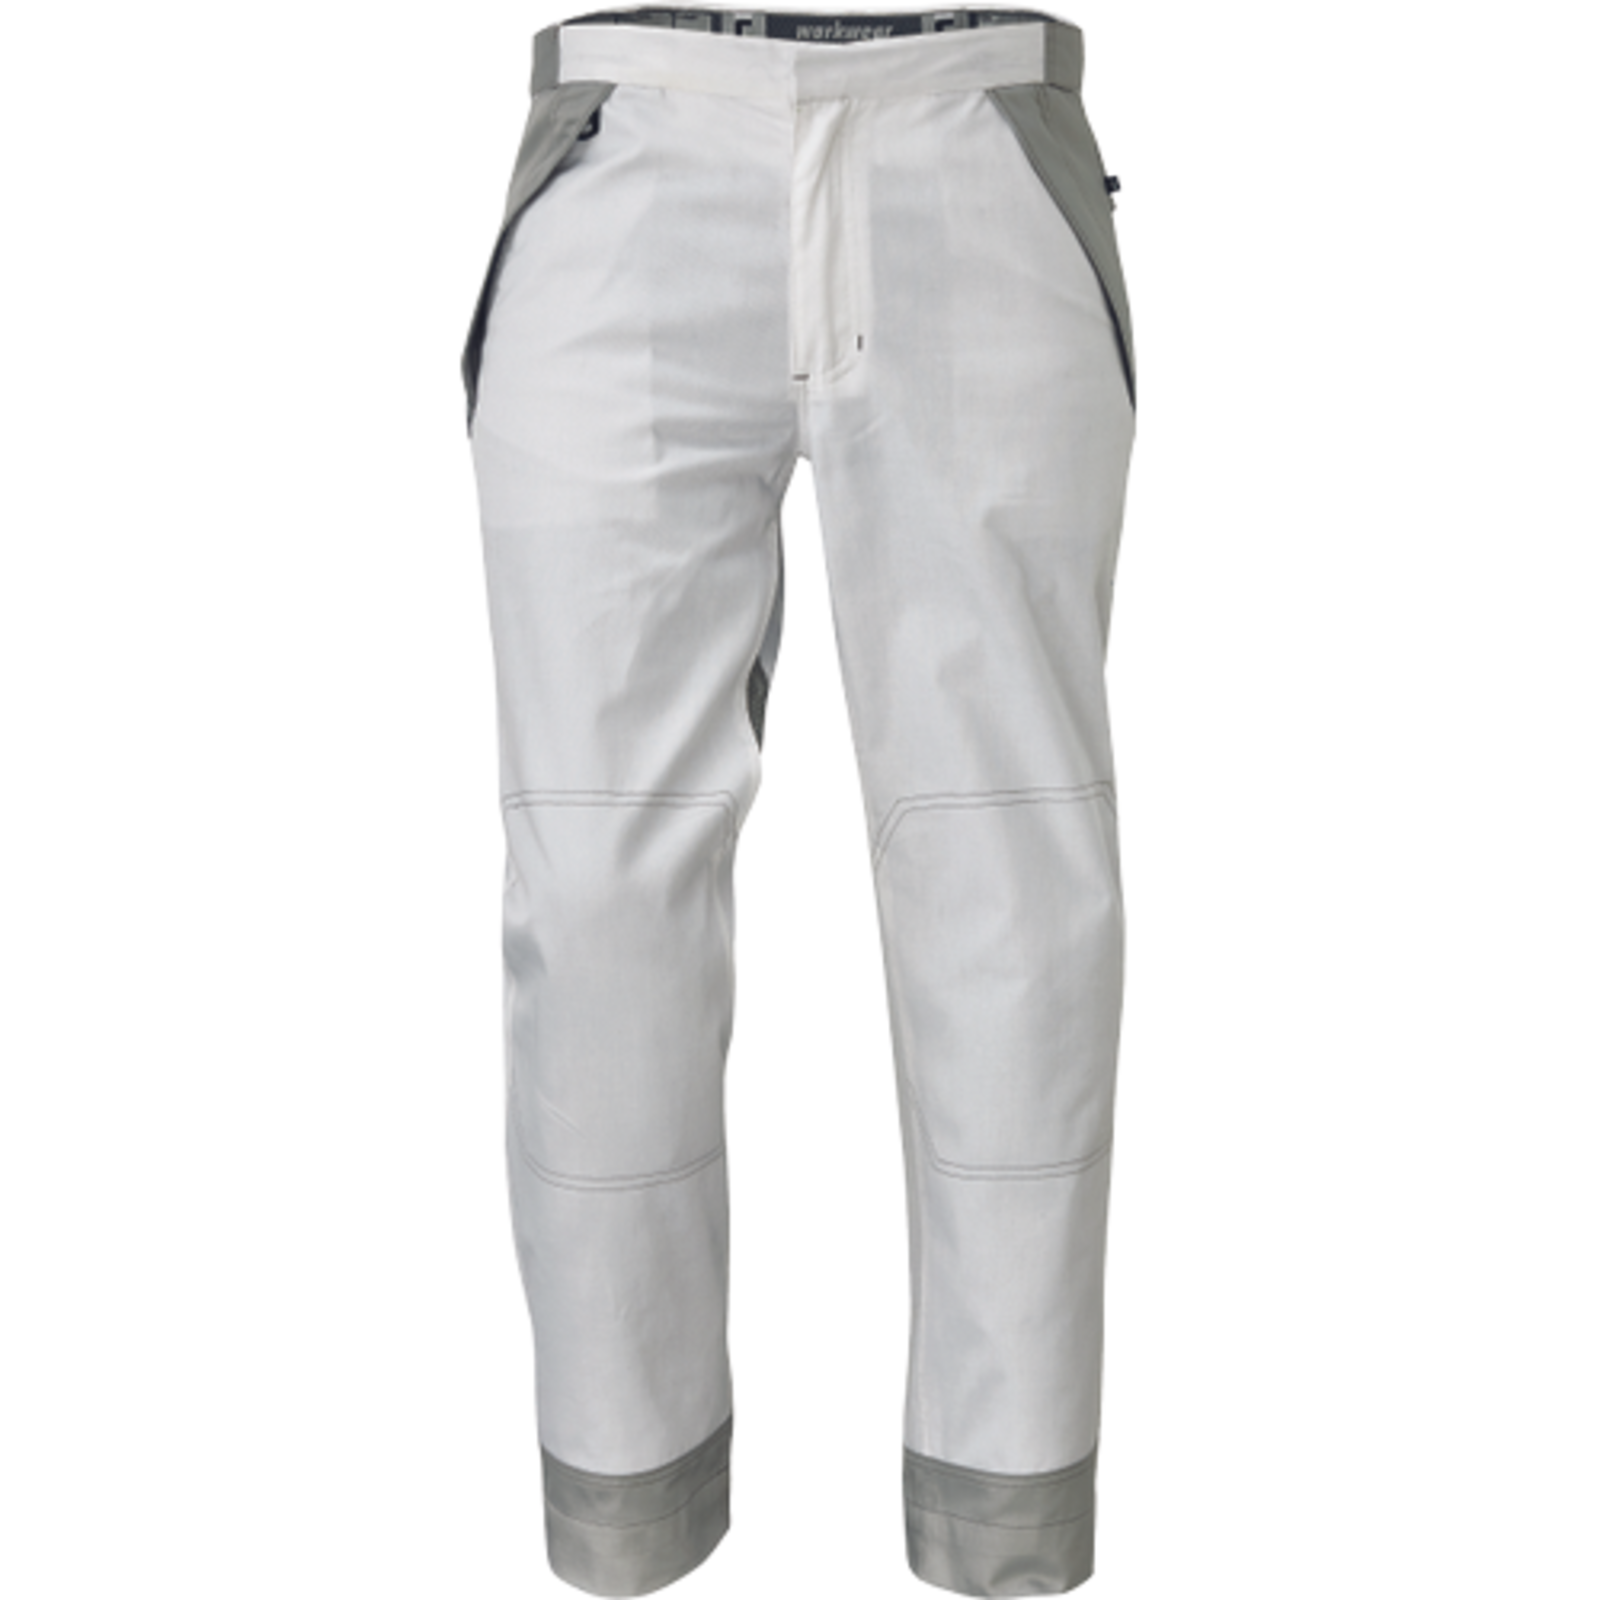 Pánske pracovné nohavice Cerva Montrose  - veľkosť: 48, farba: biela/sivá